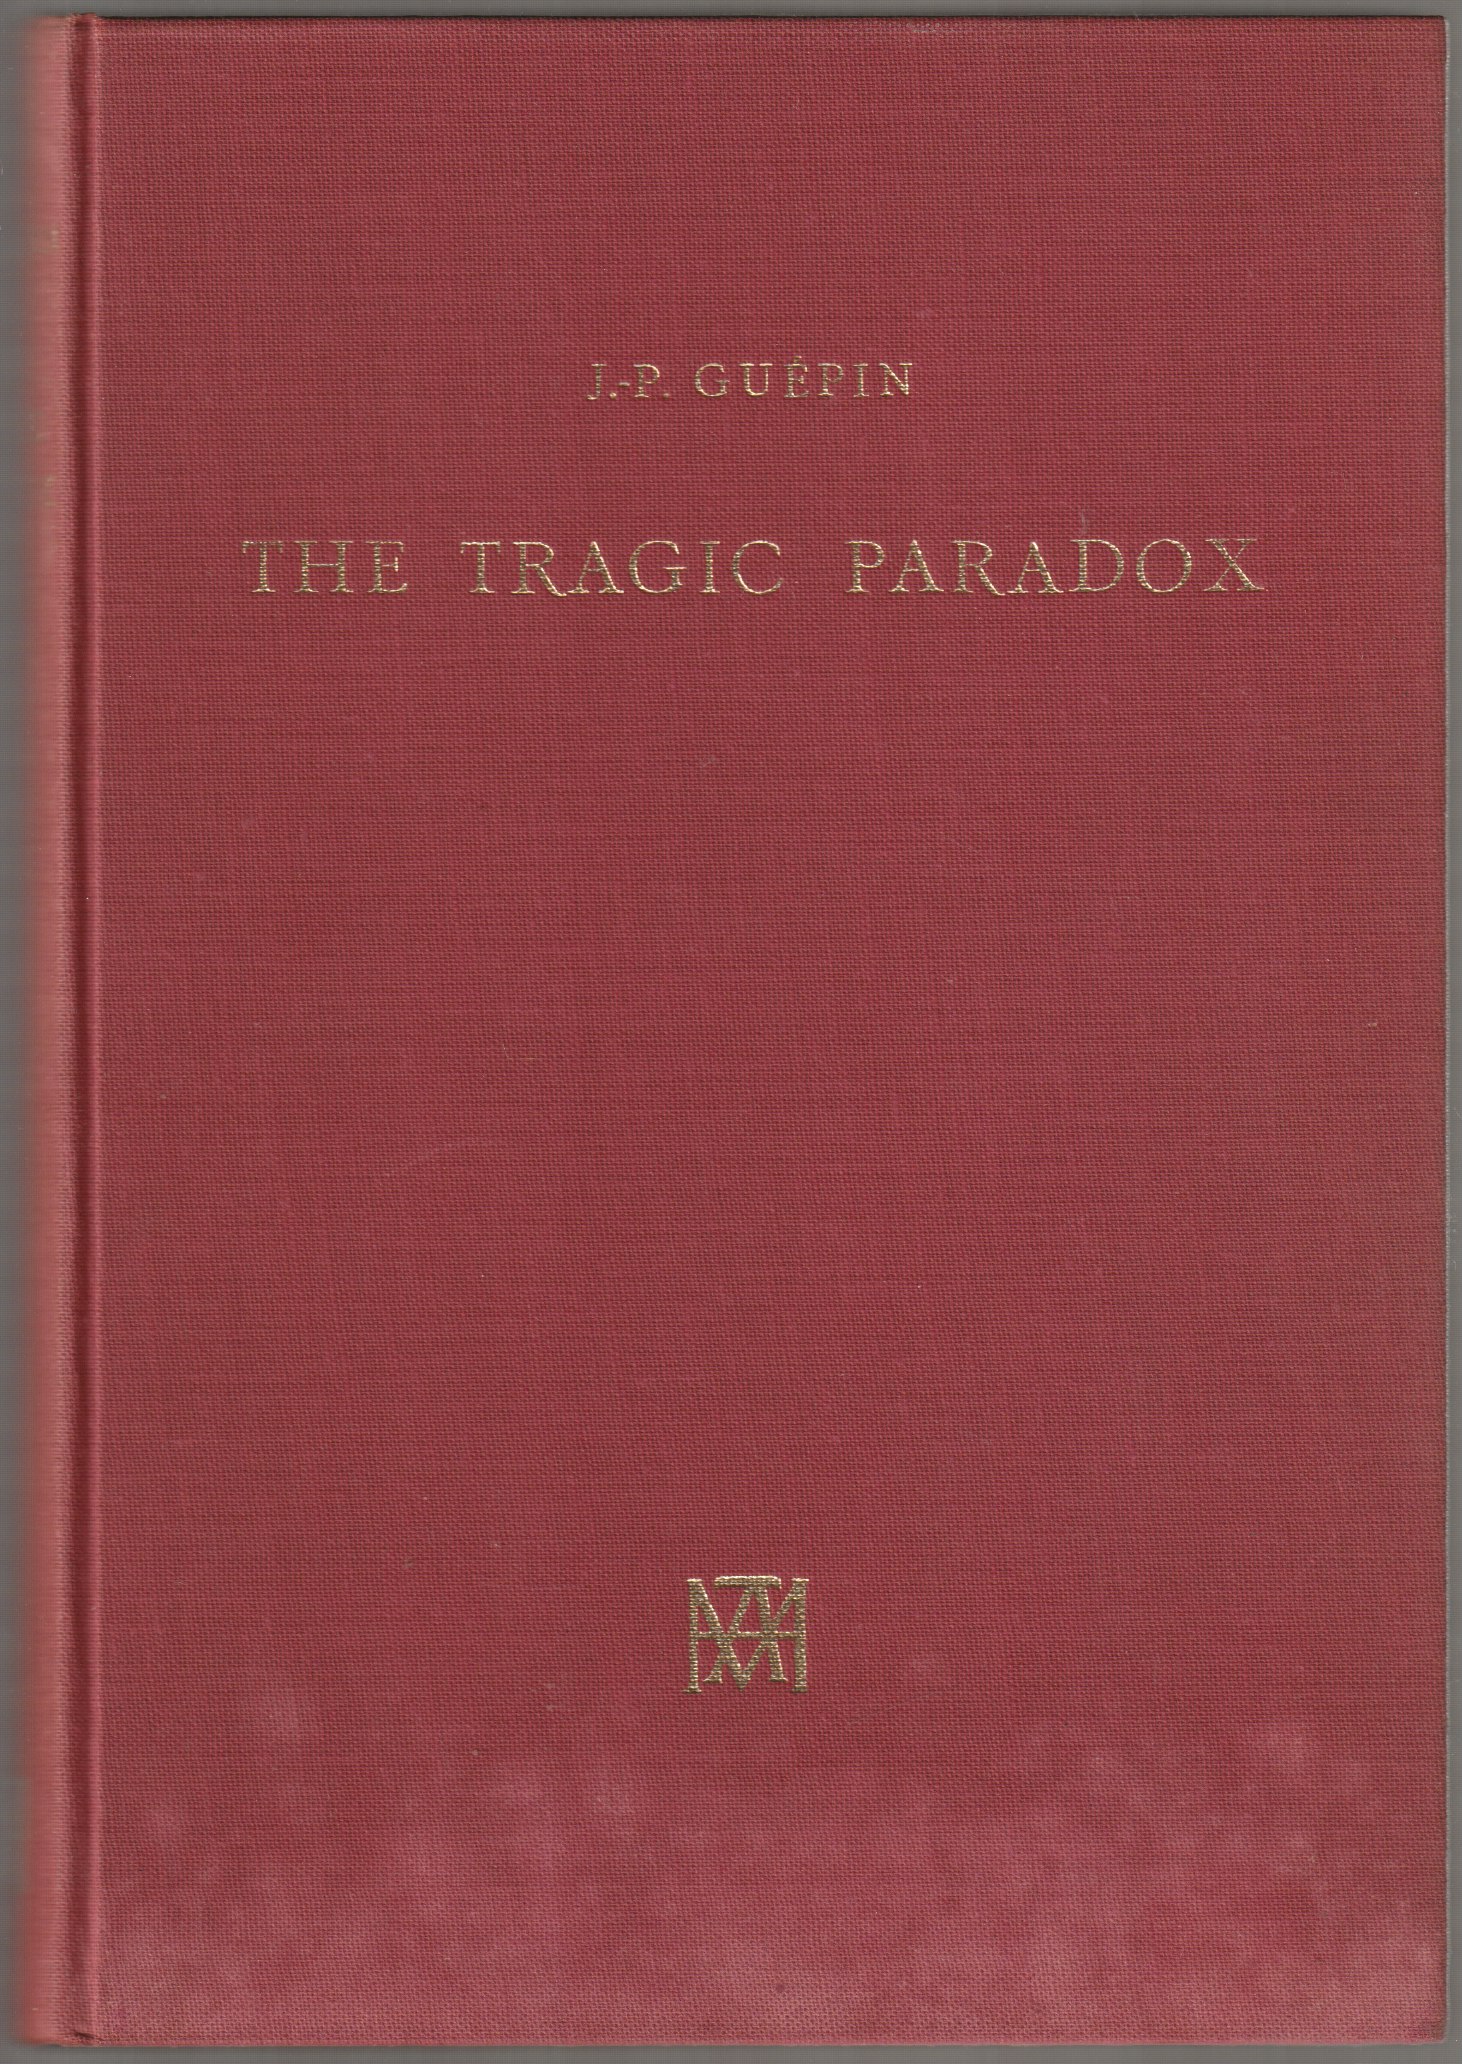 The tragic paradox : myth and ritual in Greek tragedy.